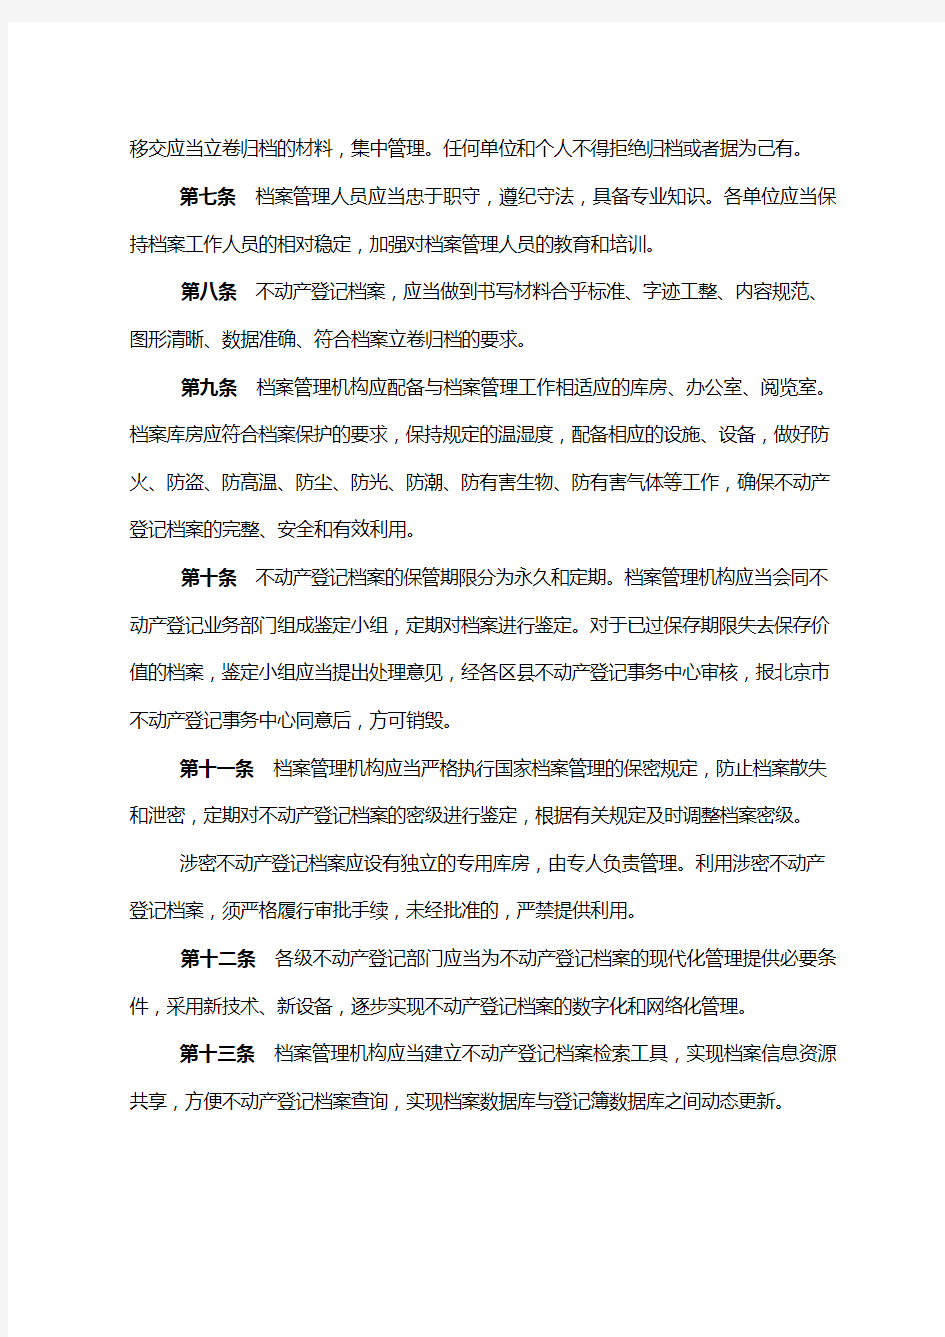 北京市不动产登记档案管理暂行办法